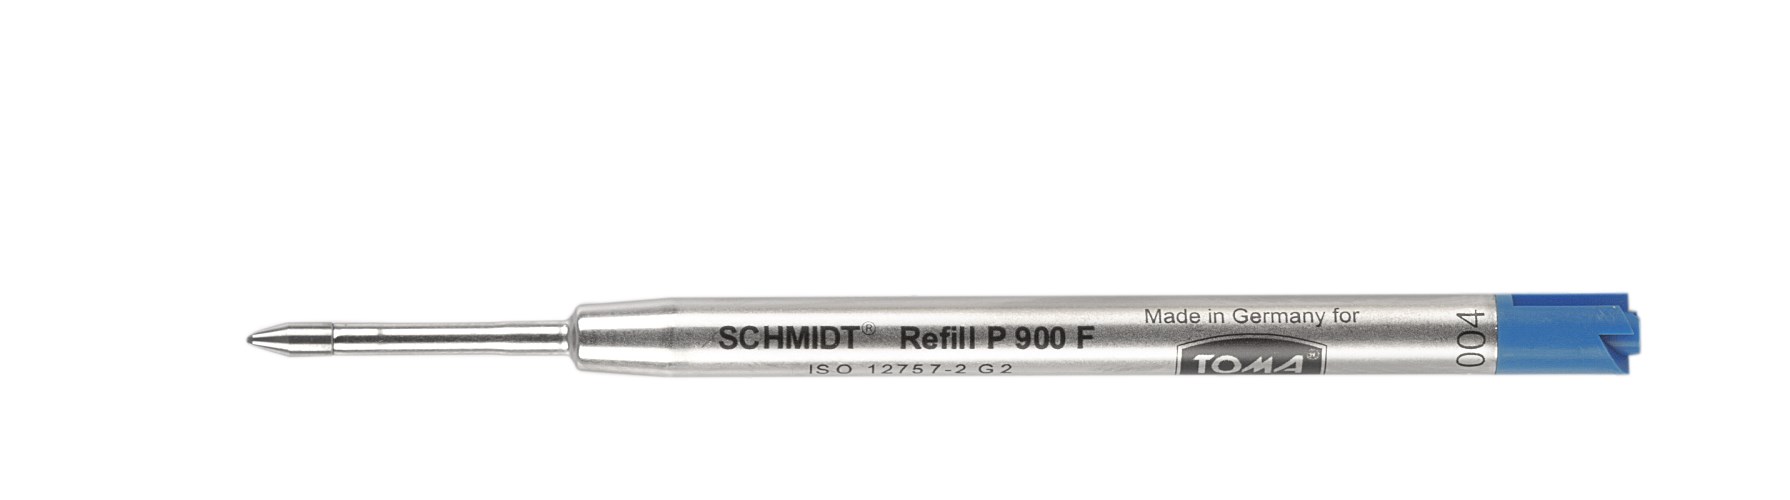 Wkłady SCHMIDT Tech. P900 F/M, linia 9km  niebieski